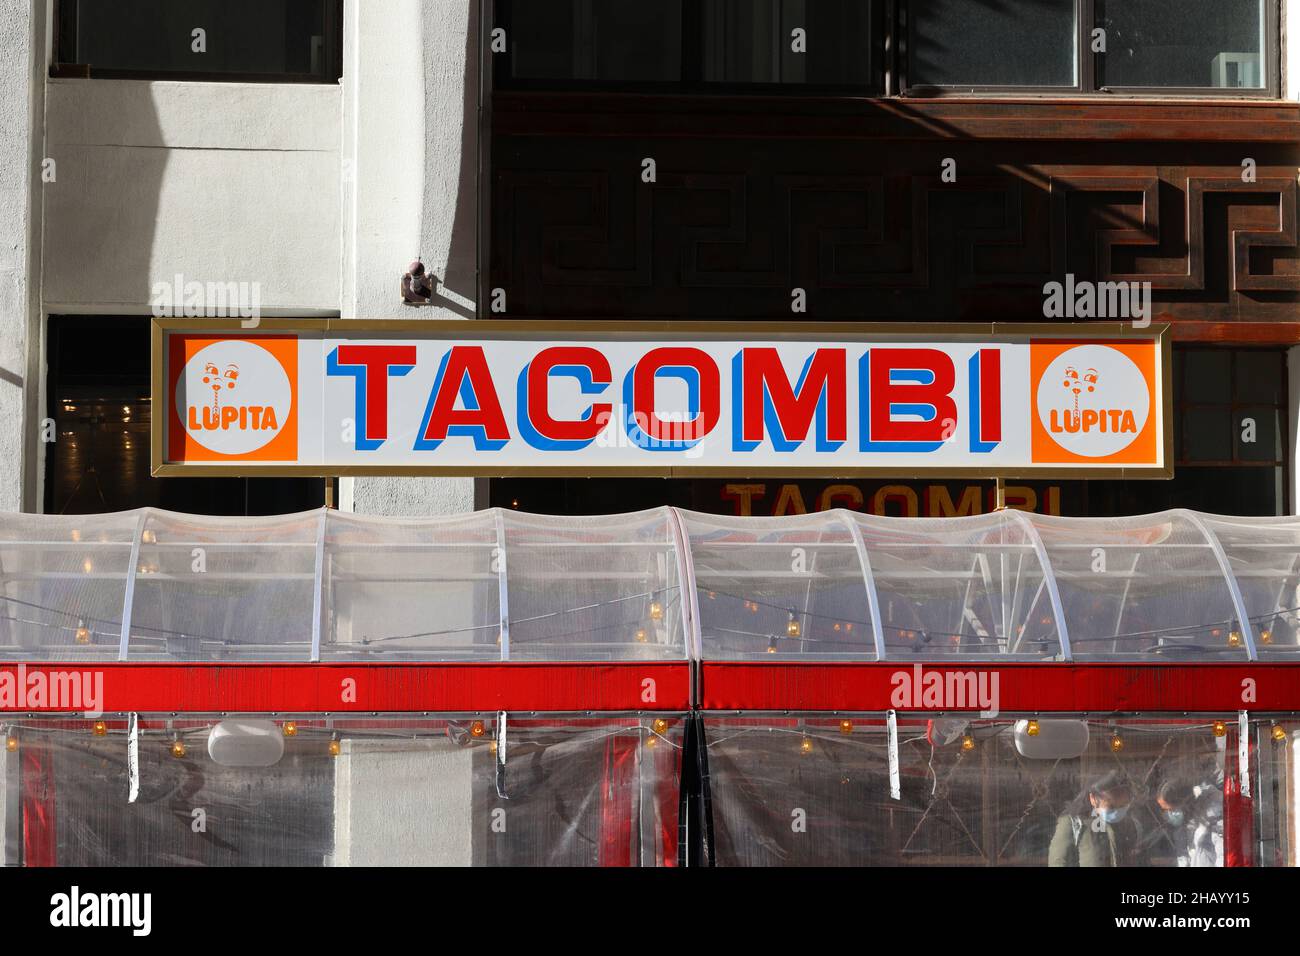 Une enseigne dans un restaurant Tacombi de New York ; une chaîne de restaurants mexicains rapides et décontractés et leur marque de jus de fruits frais et de sodas Lupita. Banque D'Images